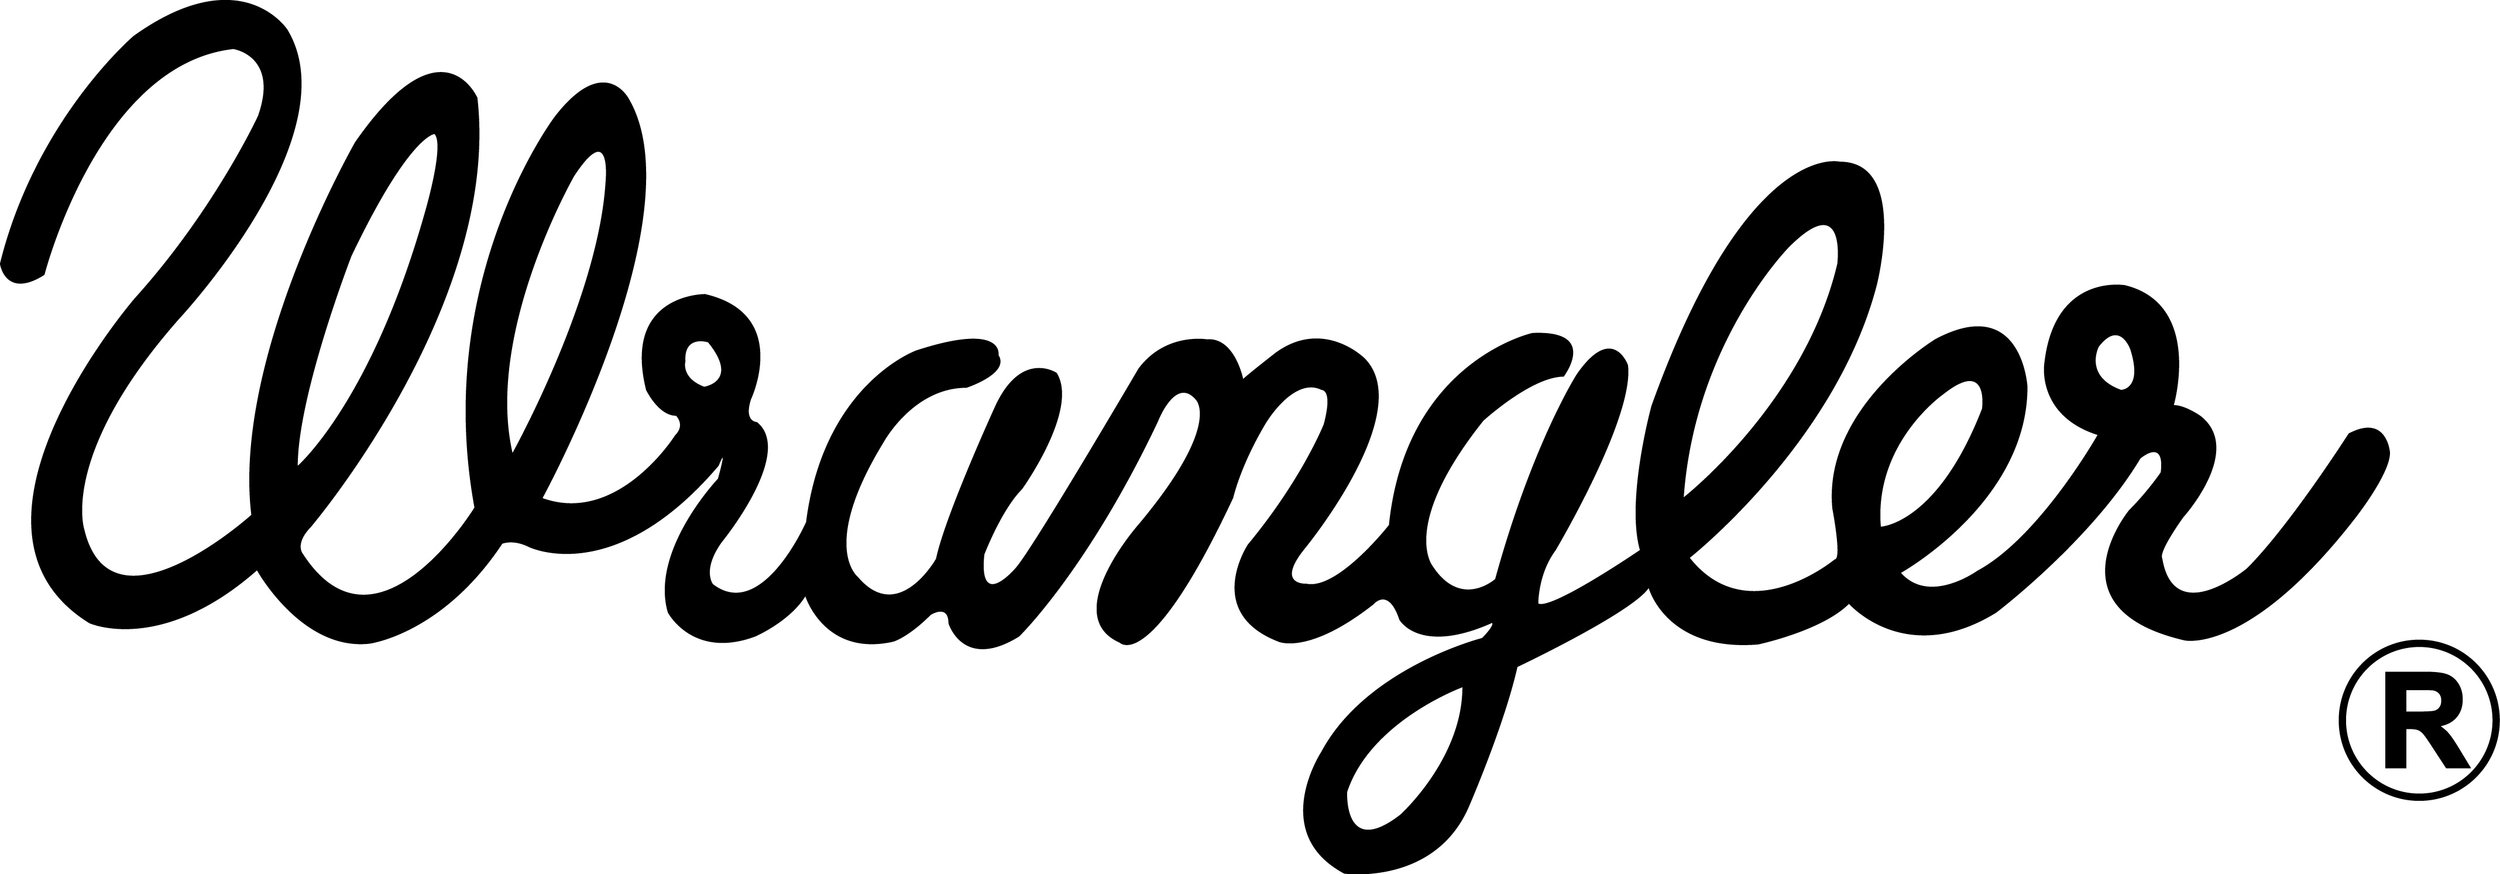 wrangler-rope-logo-latest.jpg